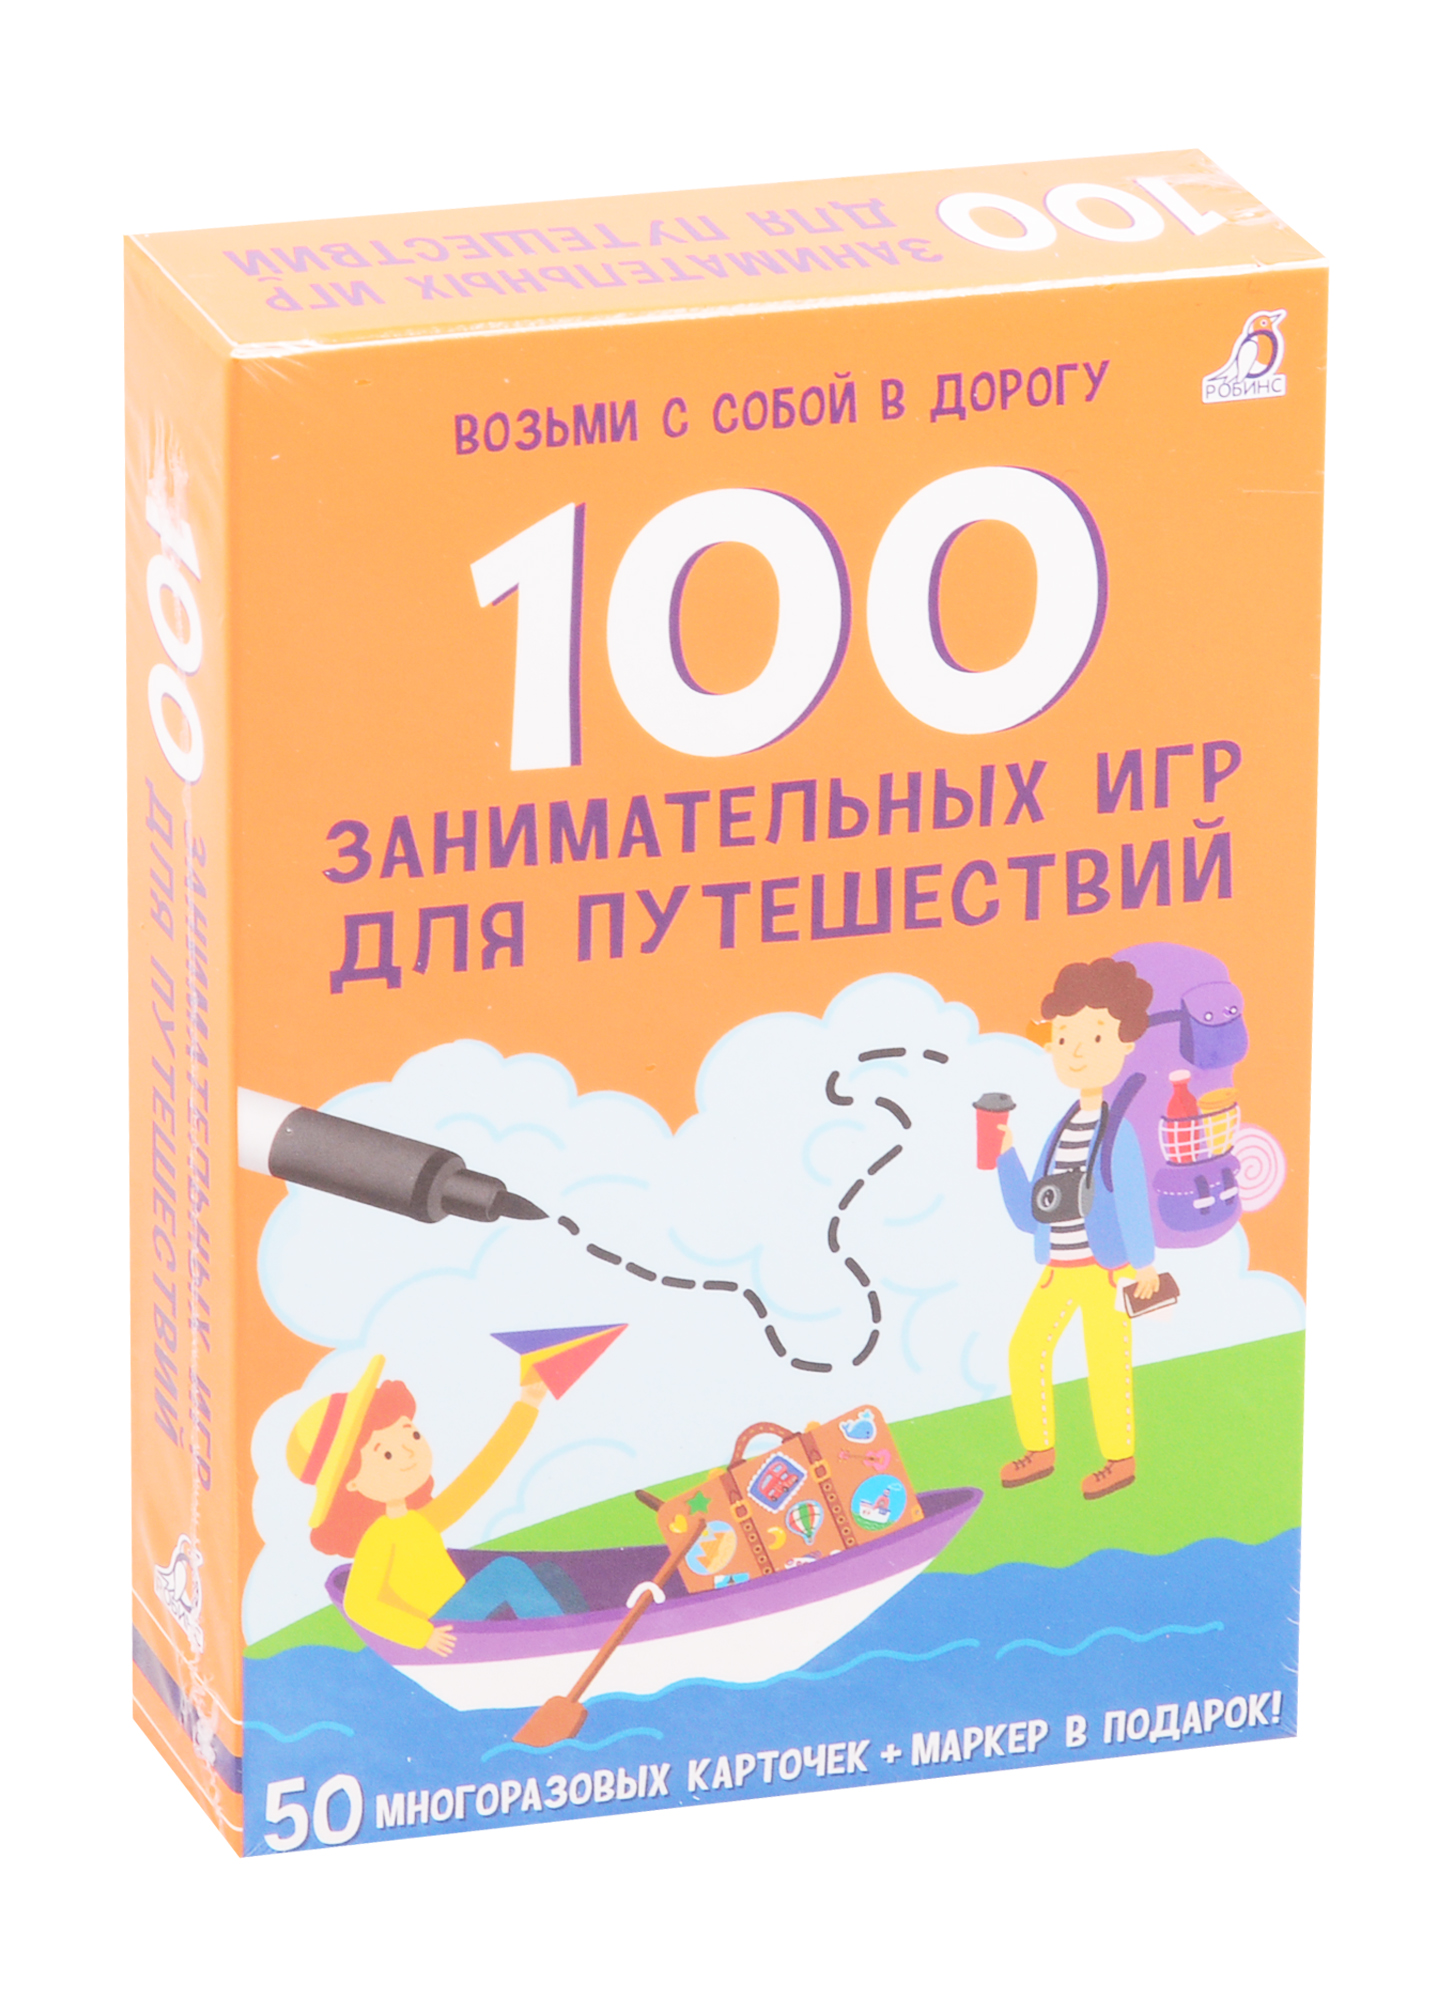 Асборн - карточки. 100 занимательных игр для путешествий асборн карточки 100 увлекательных игр для путешествий елена писарева